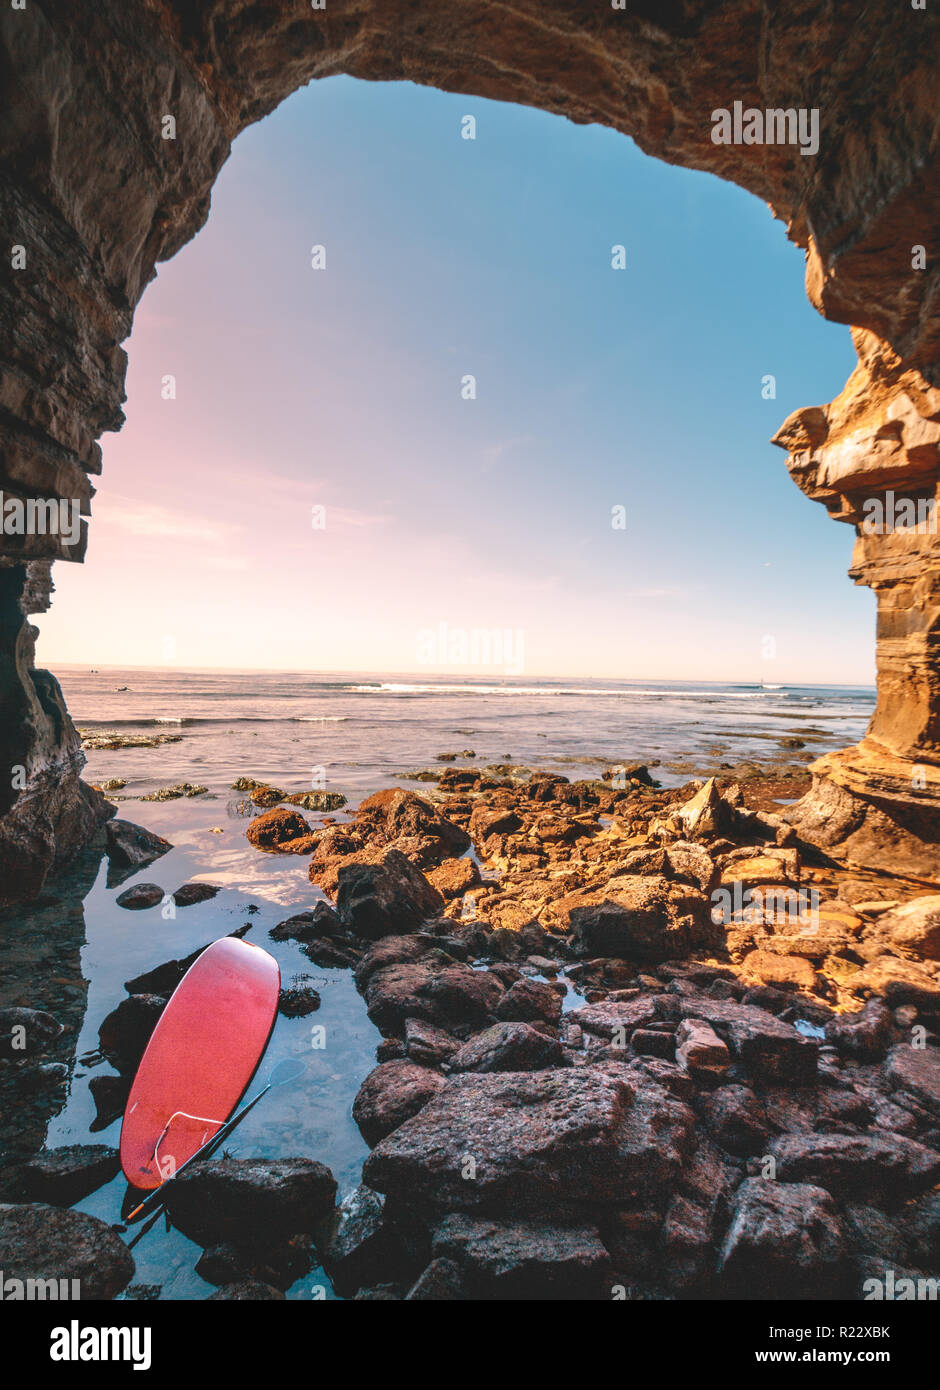 Abondoned rot Surfbrett am Eingang zu einer Höhle. Viele Felsen im Vordergrund und einen Sonnenuntergang Marine im Hintergrund. Entlang Sonnenuntergang Cli entfernt Stockfoto